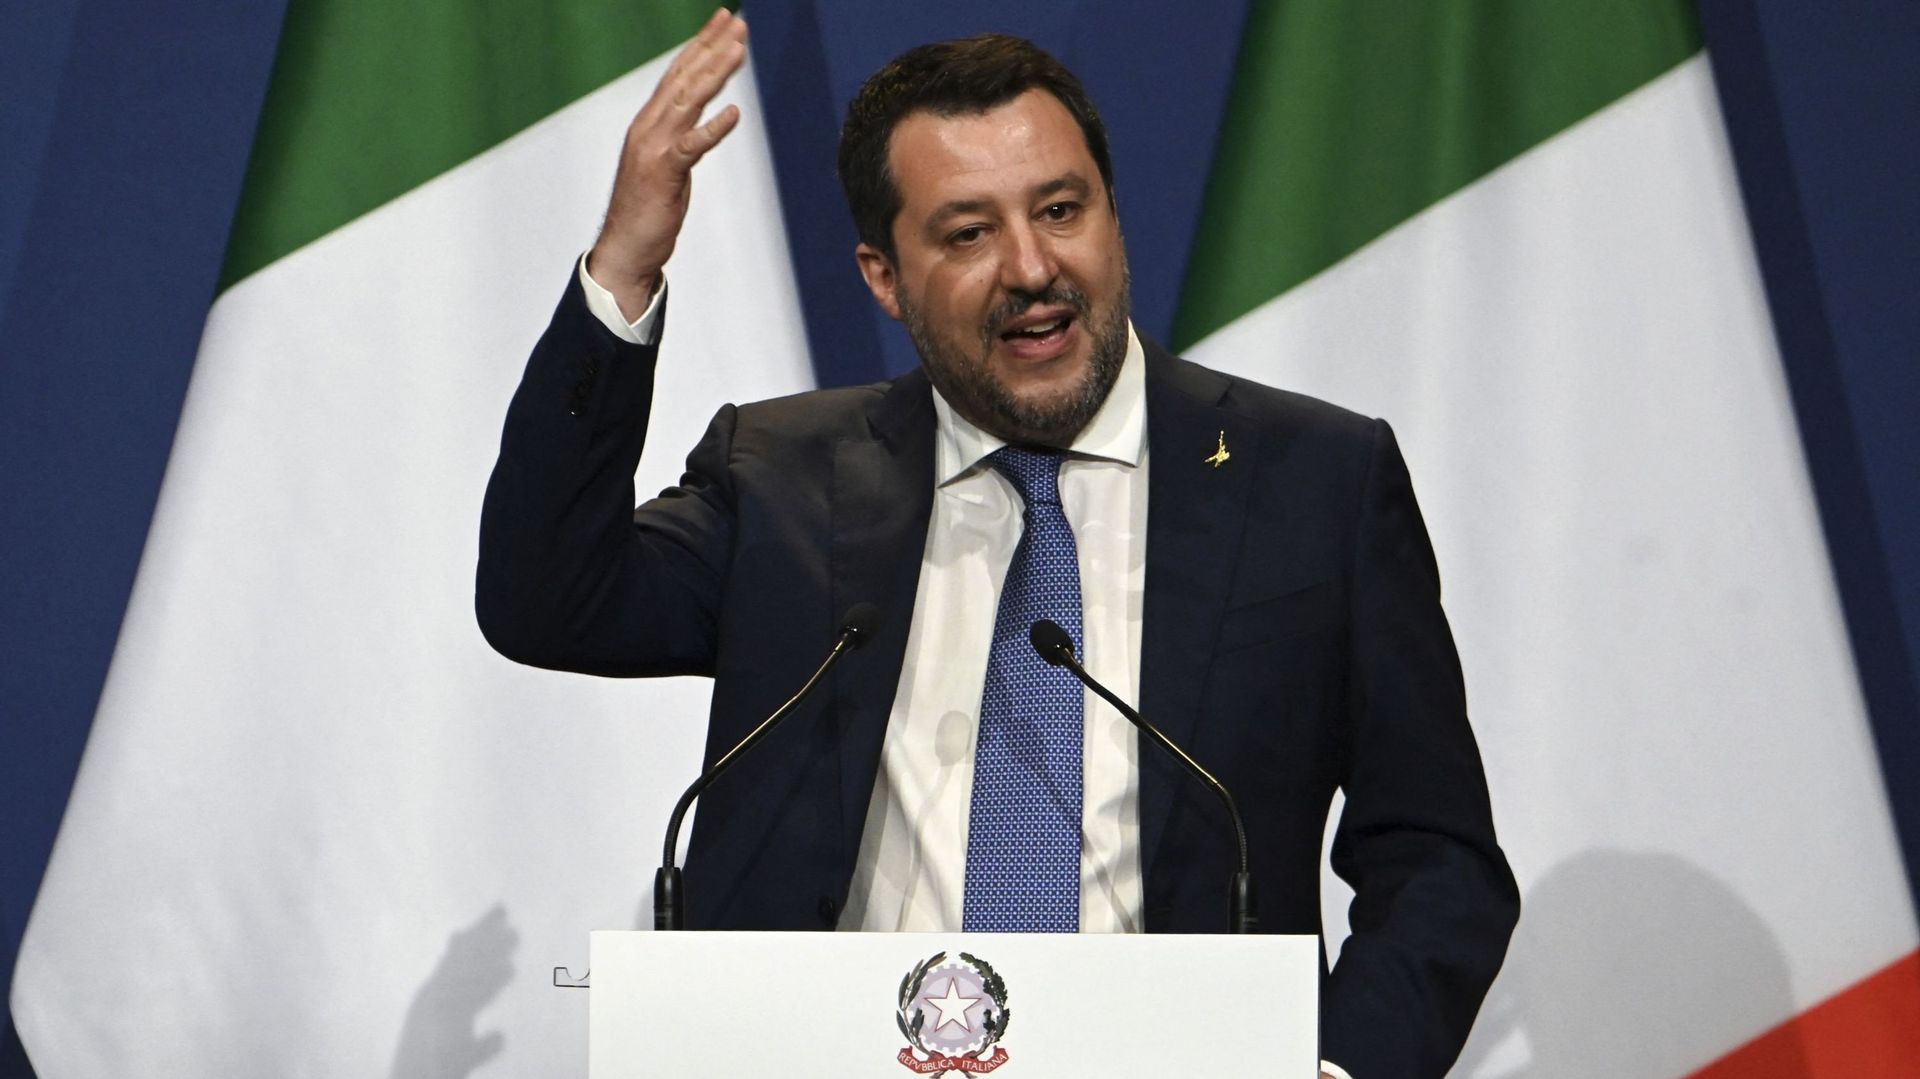 Matteo Salvini, leader de la Ligue (ex Ligue du Nord), tiraillé entre désir de droite dure européenne et impératifs électoraux en Italie.   